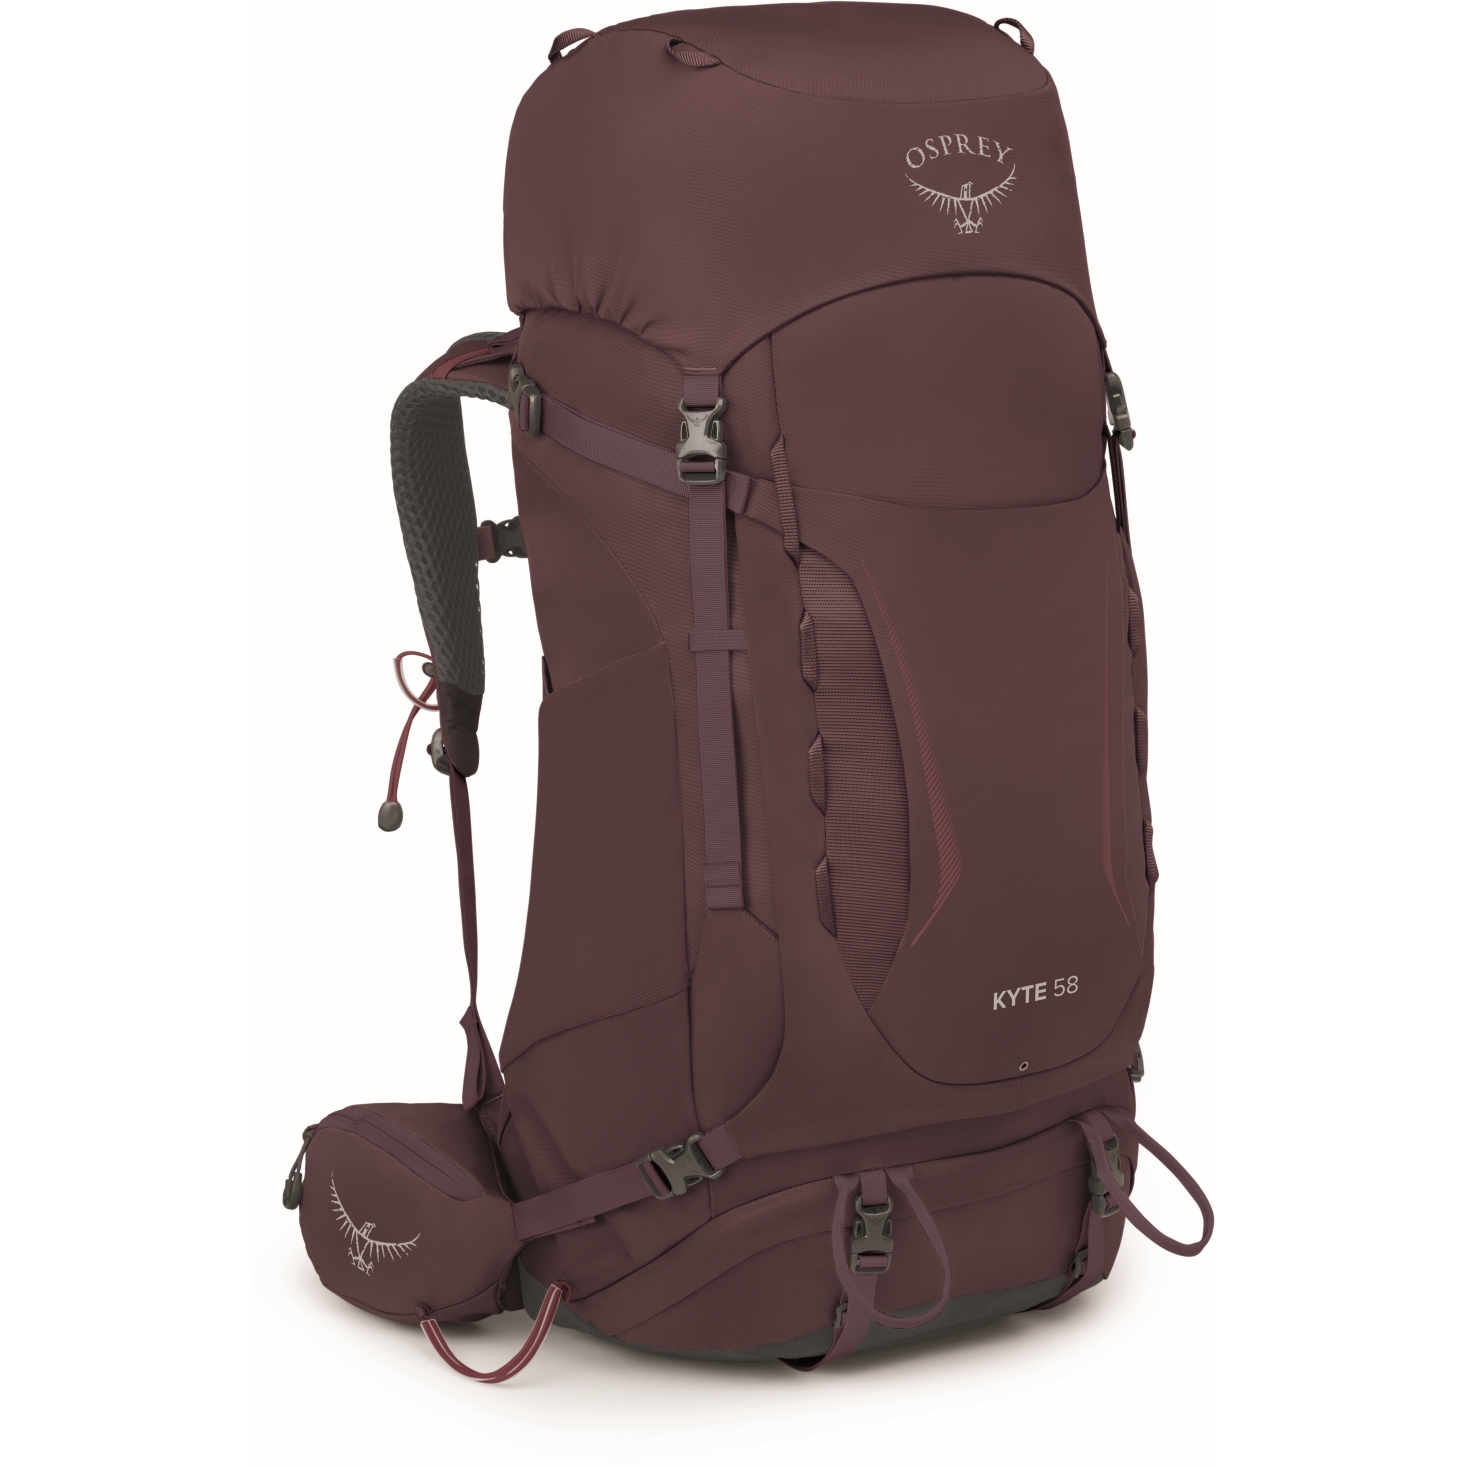 Image of Osprey Kyte 58 Women's Backpack - Elderberry Purple - M/L